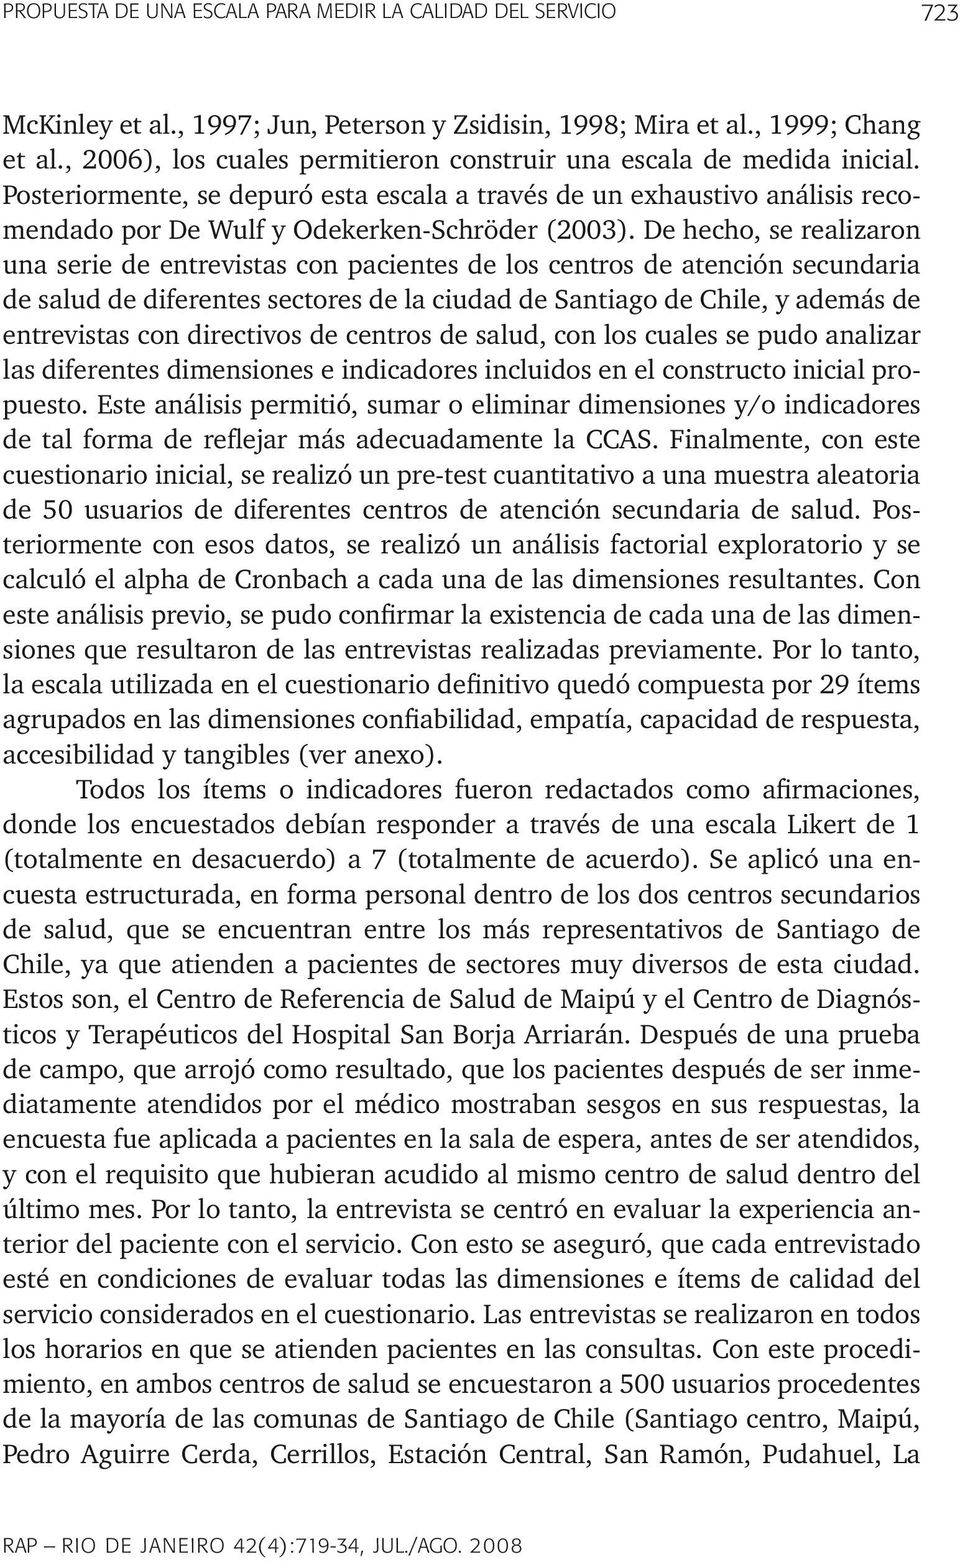 De hecho, se realizaron una serie de entrevistas con pacientes de los centros de atención secundaria de salud de diferentes sectores de la ciudad de Santiago de Chile, y además de entrevistas con